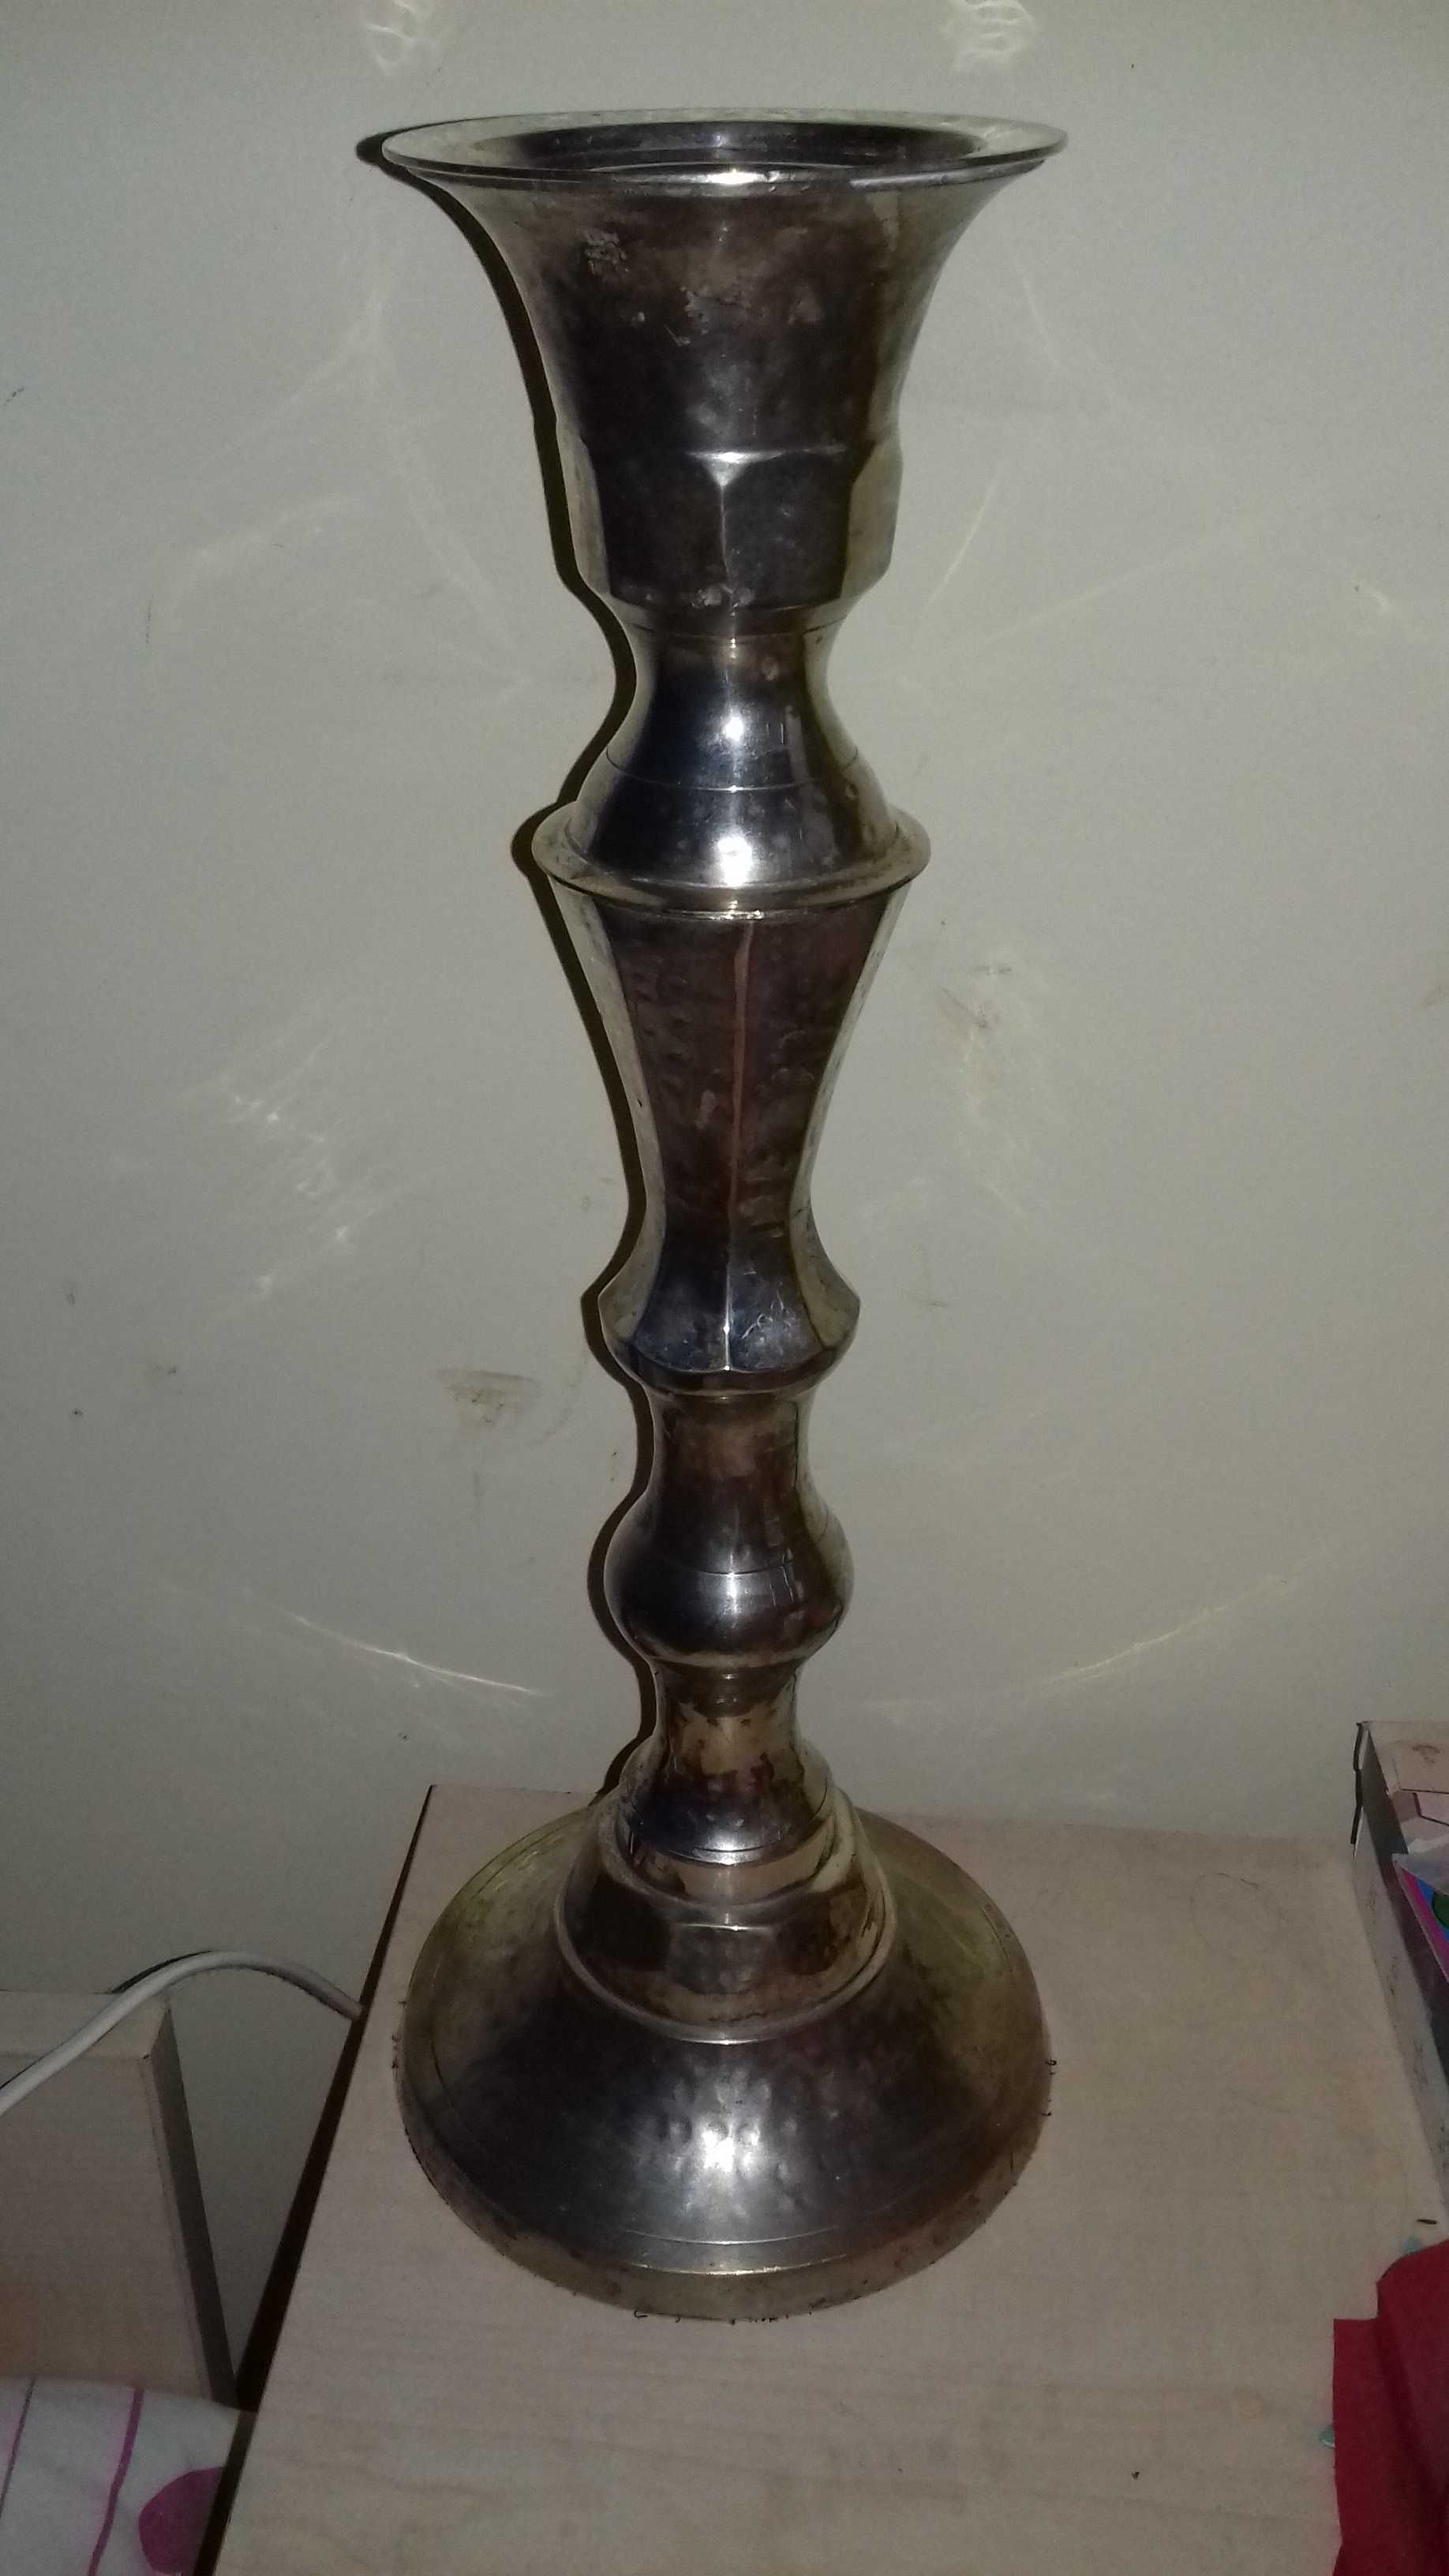 świecznik jednoramienny platerowany,  wysoki 38 cm